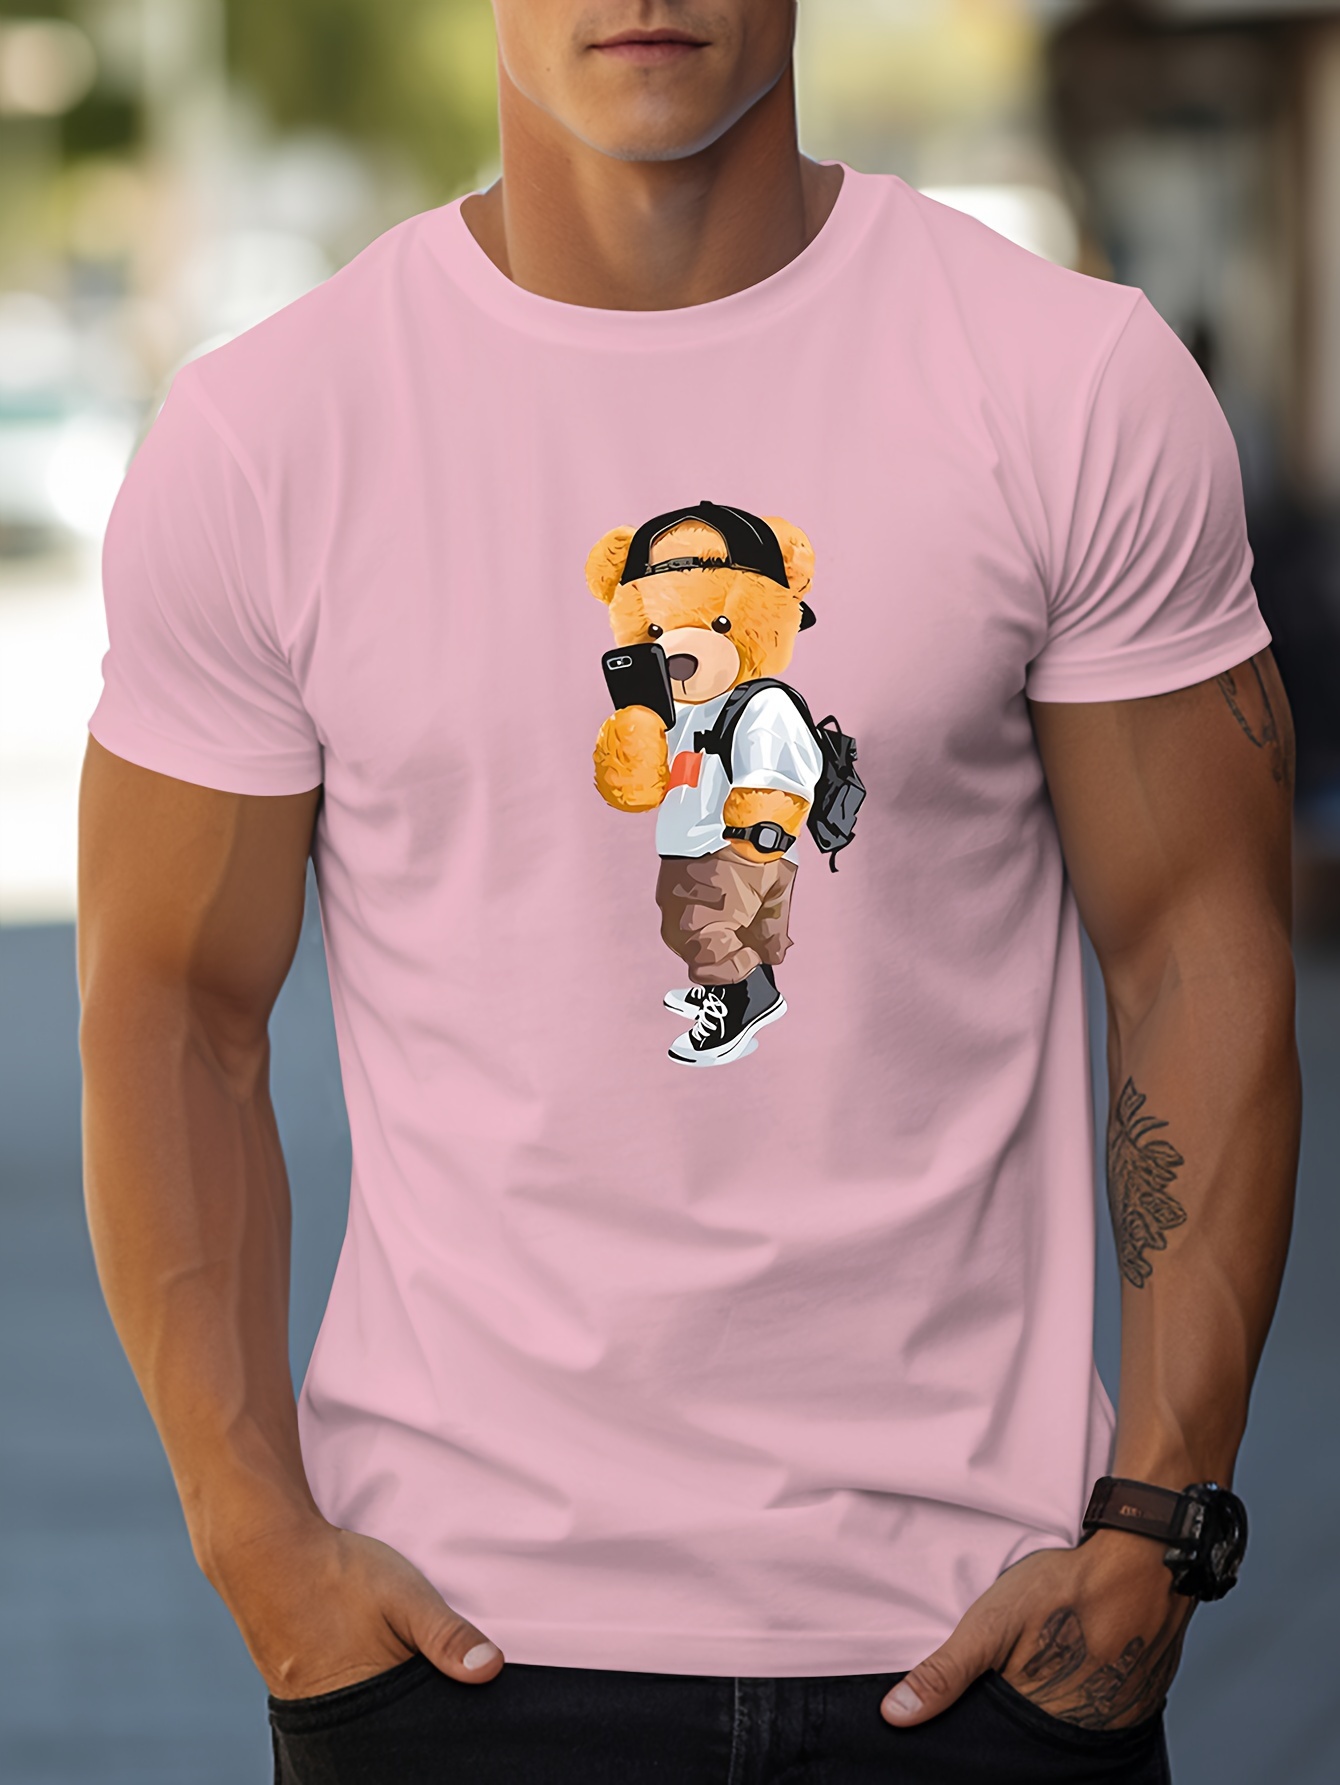 Kawaii Bear Graphic T Shirts Women Men Cartoon Short Sleeve Top